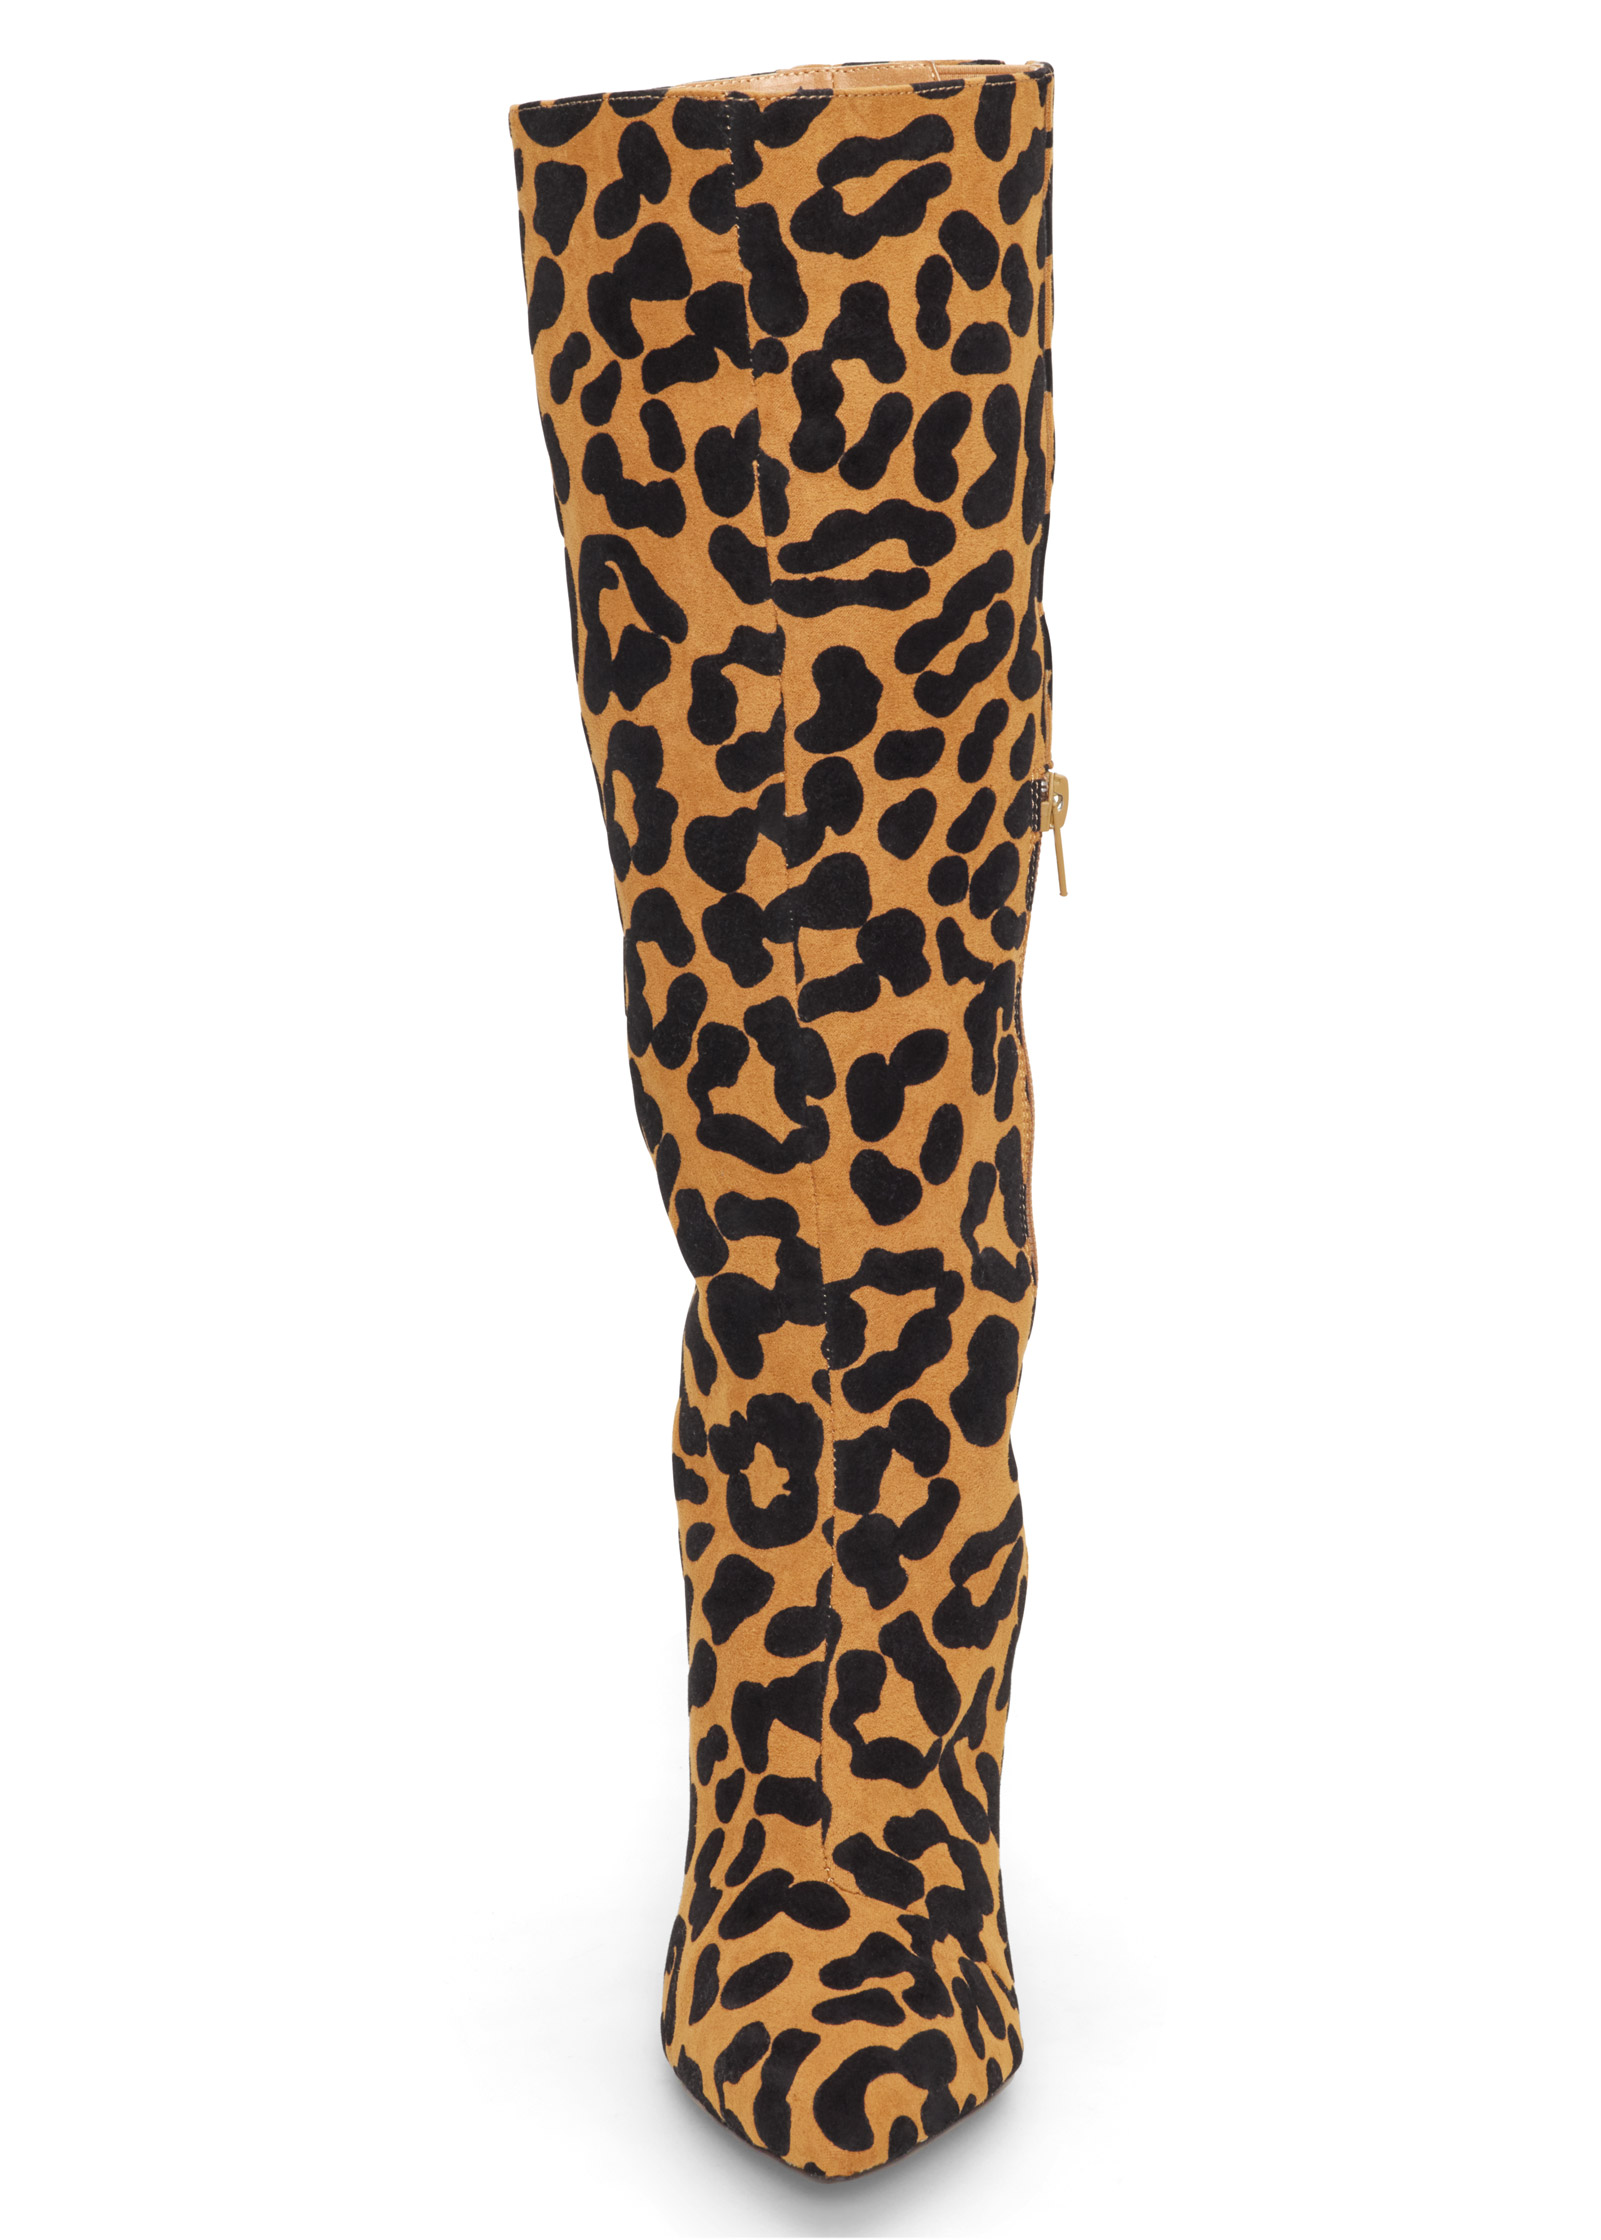 wide width leopard boots